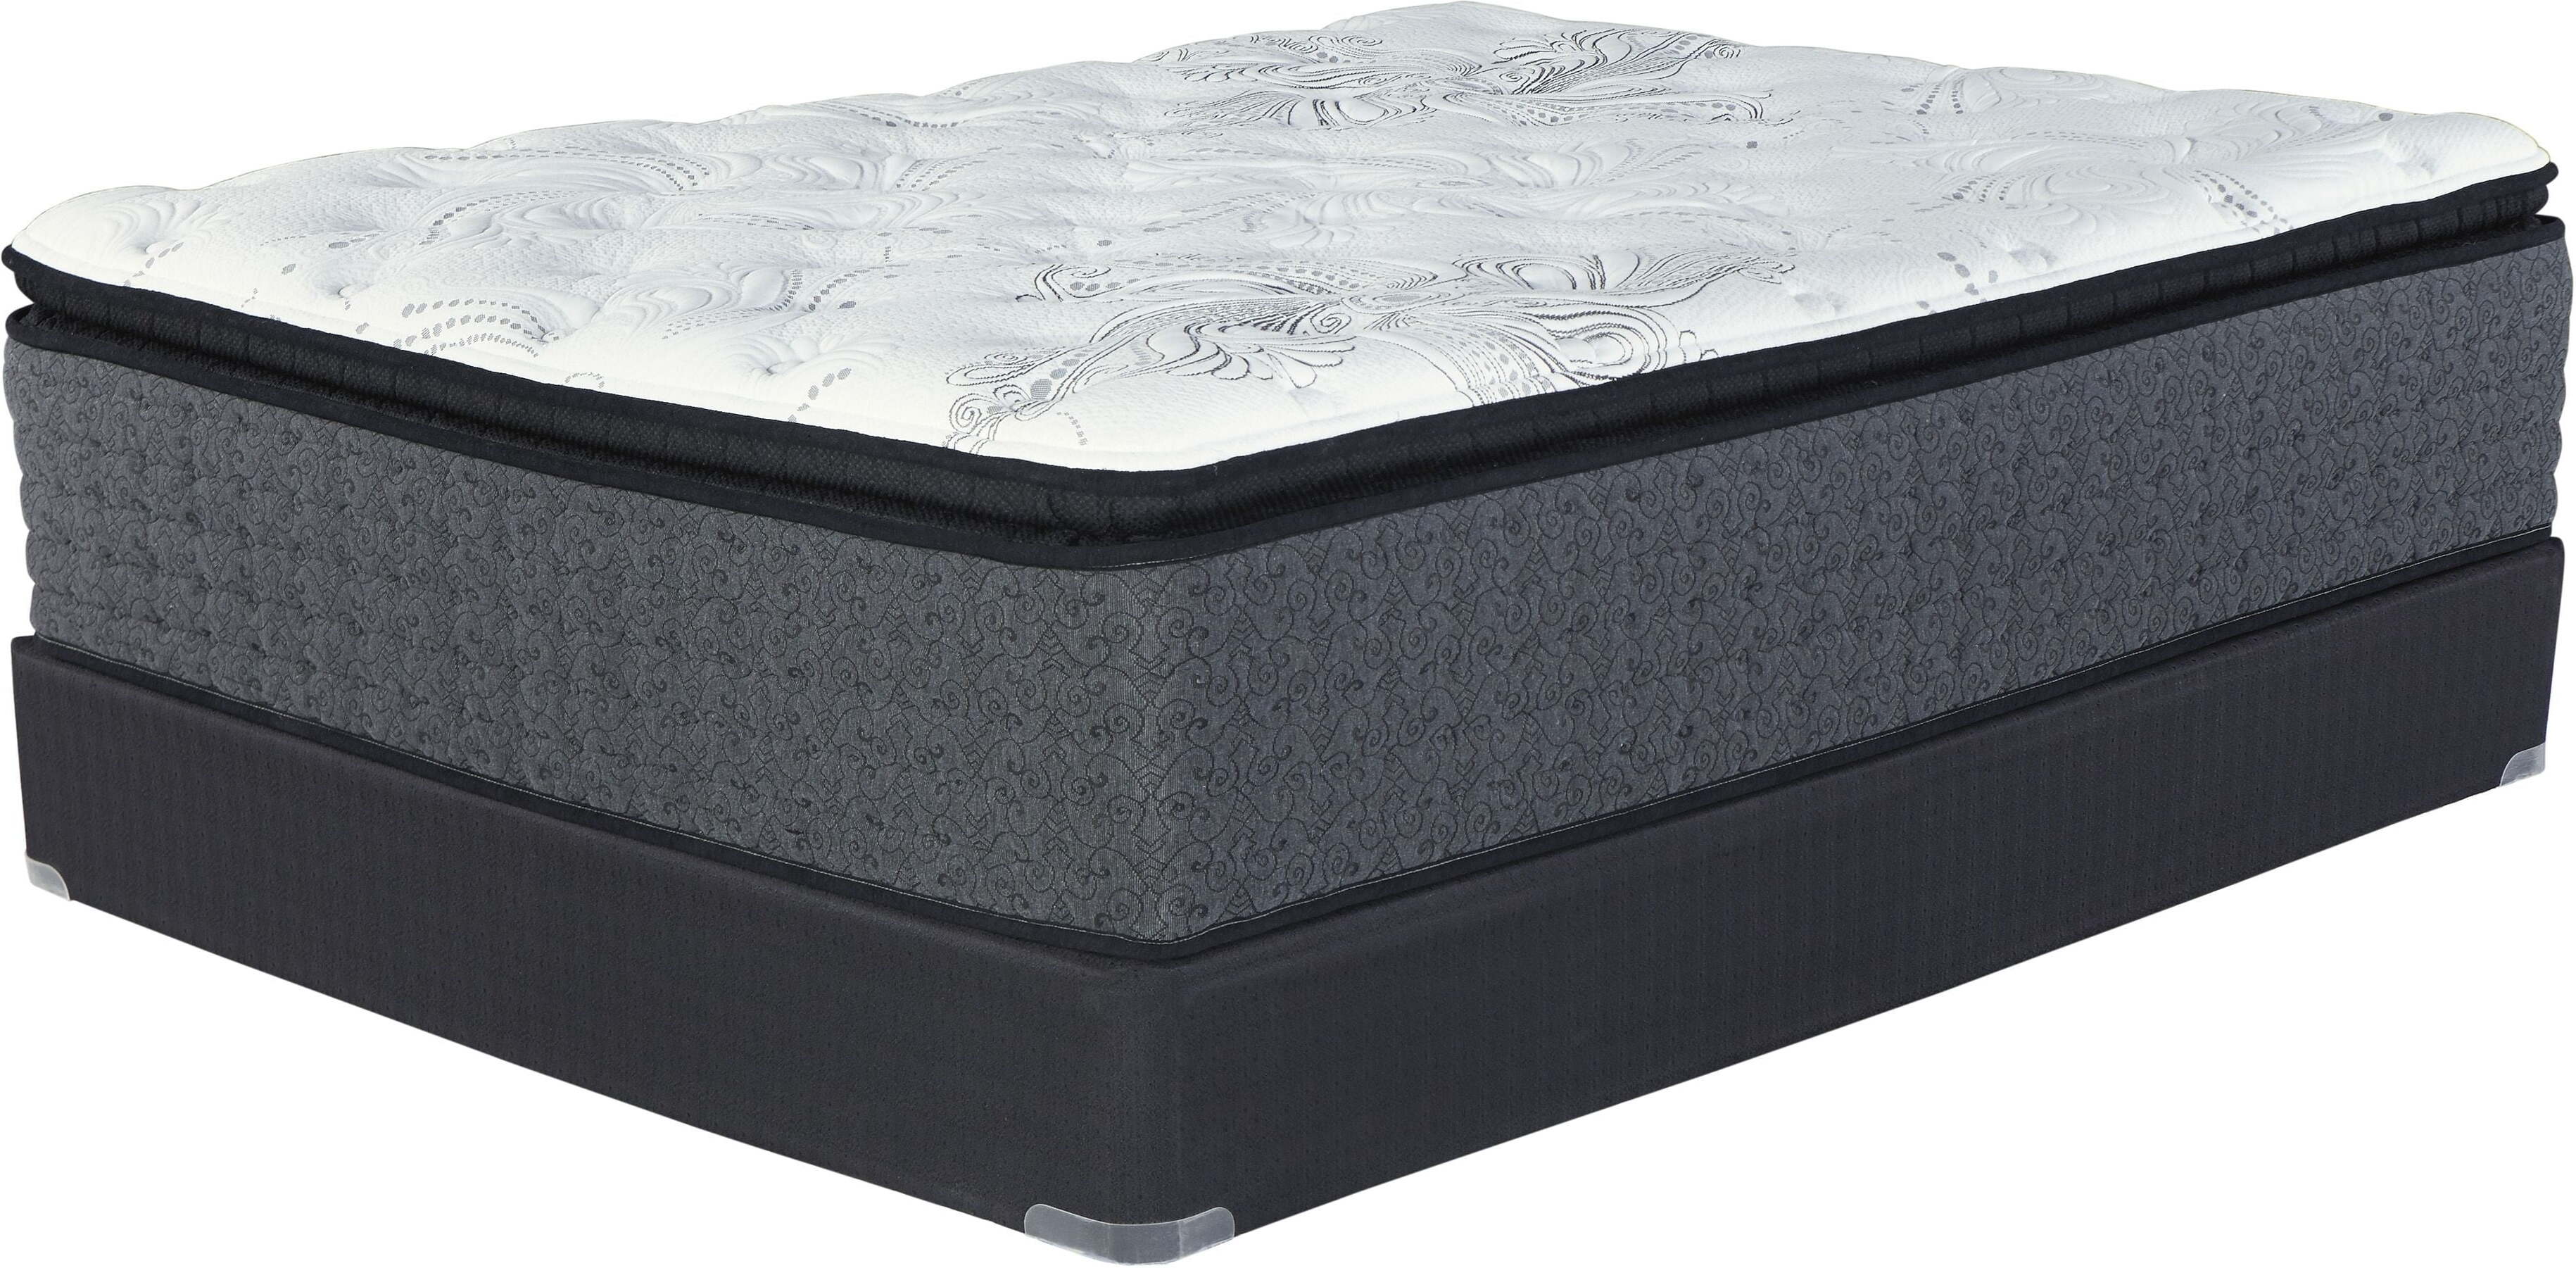 firm pillowtop queen mattress set